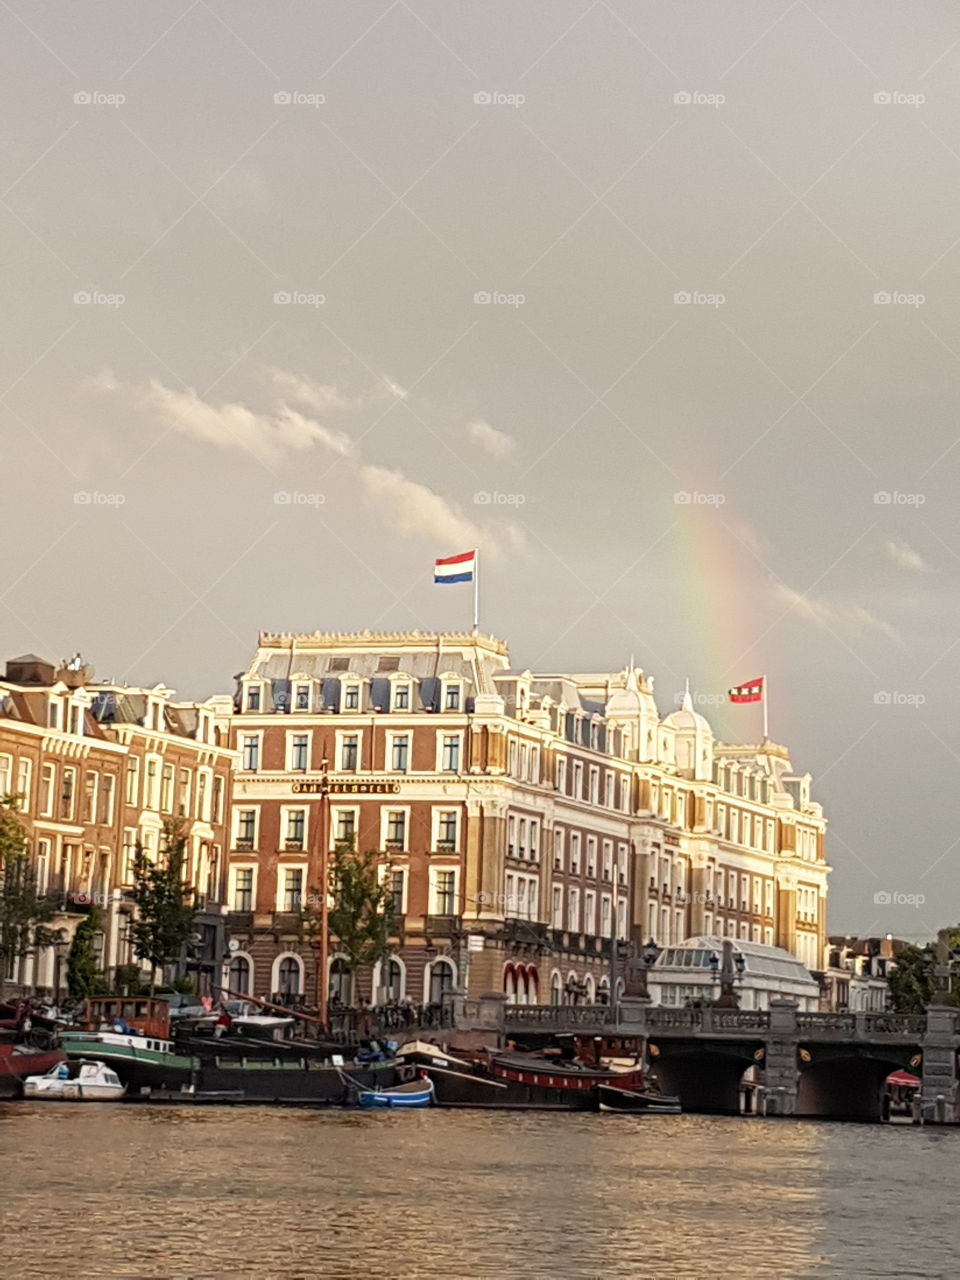 amsterdam hotel starting rainbow